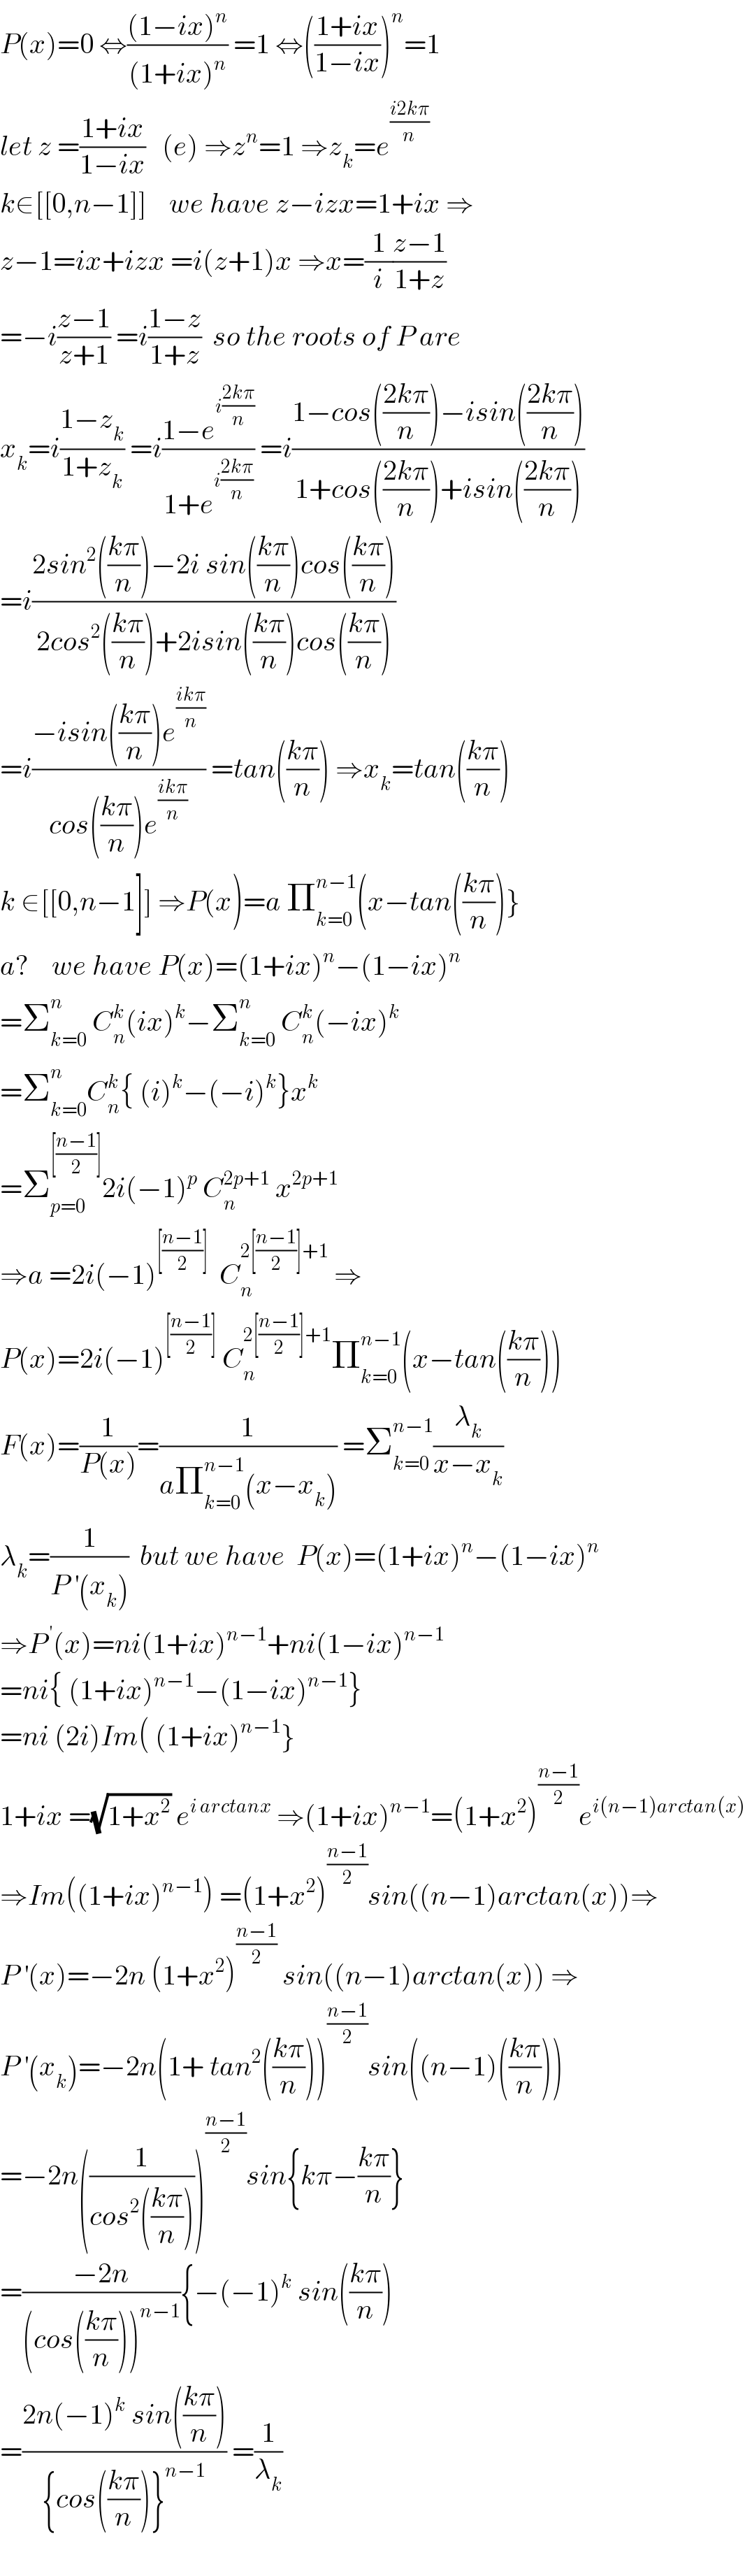 P(x)=0 ⇔(((1−ix)^n )/((1+ix)^n )) =1 ⇔(((1+ix)/(1−ix)))^n =1  let z =((1+ix)/(1−ix))   (e) ⇒z^n =1 ⇒z_k =e^((i2kπ)/n)   k∈[[0,n−1]]    we have z−izx=1+ix ⇒  z−1=ix+izx =i(z+1)x ⇒x=(1/i)((z−1)/(1+z))  =−i((z−1)/(z+1)) =i((1−z)/(1+z))  so the roots of P are  x_k =i((1−z_k )/(1+z_k )) =i((1−e^(i((2kπ)/n)) )/(1+e^(i((2kπ)/n)) )) =i((1−cos(((2kπ)/n))−isin(((2kπ)/n)))/(1+cos(((2kπ)/n))+isin(((2kπ)/n))))  =i((2sin^2 (((kπ)/n))−2i sin(((kπ)/n))cos(((kπ)/n)))/(2cos^2 (((kπ)/n))+2isin(((kπ)/n))cos(((kπ)/n))))  =i((−isin(((kπ)/n))e^((ikπ)/n) )/(cos(((kπ)/n))e^((ikπ)/n) )) =tan(((kπ)/n)) ⇒x_k =tan(((kπ)/n))  k ∈[[0,n−1]] ⇒P(x)=a Π_(k=0) ^(n−1) (x−tan(((kπ)/n))}  a?    we have P(x)=(1+ix)^n −(1−ix)^n   =Σ_(k=0) ^n  C_n ^k (ix)^k −Σ_(k=0) ^n  C_n ^k (−ix)^k   =Σ_(k=0) ^n C_n ^k { (i)^k −(−i)^k }x^k   =Σ_(p=0) ^([((n−1)/2)]) 2i(−1)^p  C_n ^(2p+1)  x^(2p+1)   ⇒a =2i(−1)^([((n−1)/2)])   C_n ^(2[((n−1)/2)]+1)  ⇒  P(x)=2i(−1)^([((n−1)/2)])  C_n ^(2[((n−1)/2)]+1) Π_(k=0) ^(n−1) (x−tan(((kπ)/n)))  F(x)=(1/(P(x)))=(1/(aΠ_(k=0) ^(n−1) (x−x_k ))) =Σ_(k=0) ^(n−1) (λ_k /(x−x_k ))  λ_k =(1/(P^′ (x_k )))  but we have  P(x)=(1+ix)^n −(1−ix)^n   ⇒P^( ′) (x)=ni(1+ix)^(n−1) +ni(1−ix)^(n−1)   =ni{ (1+ix)^(n−1) −(1−ix)^(n−1) }  =ni (2i)Im( (1+ix)^(n−1) }  1+ix =(√(1+x^2 )) e^(i arctanx)  ⇒(1+ix)^(n−1) =(1+x^2 )^((n−1)/2) e^(i(n−1)arctan(x))   ⇒Im((1+ix)^(n−1) ) =(1+x^2 )^((n−1)/2) sin((n−1)arctan(x))⇒  P^′ (x)=−2n (1+x^2 )^((n−1)/2)  sin((n−1)arctan(x)) ⇒  P^′ (x_k )=−2n(1+ tan^2 (((kπ)/n)))^((n−1)/2) sin((n−1)(((kπ)/n)))  =−2n((1/(cos^2 (((kπ)/n)))))^((n−1)/2) sin{kπ−((kπ)/n)}  =((−2n)/((cos(((kπ)/n)))^(n−1) )){−(−1)^k  sin(((kπ)/n))  =((2n(−1)^k  sin(((kπ)/n)))/({cos(((kπ)/n))}^(n−1) )) =(1/λ_k )    